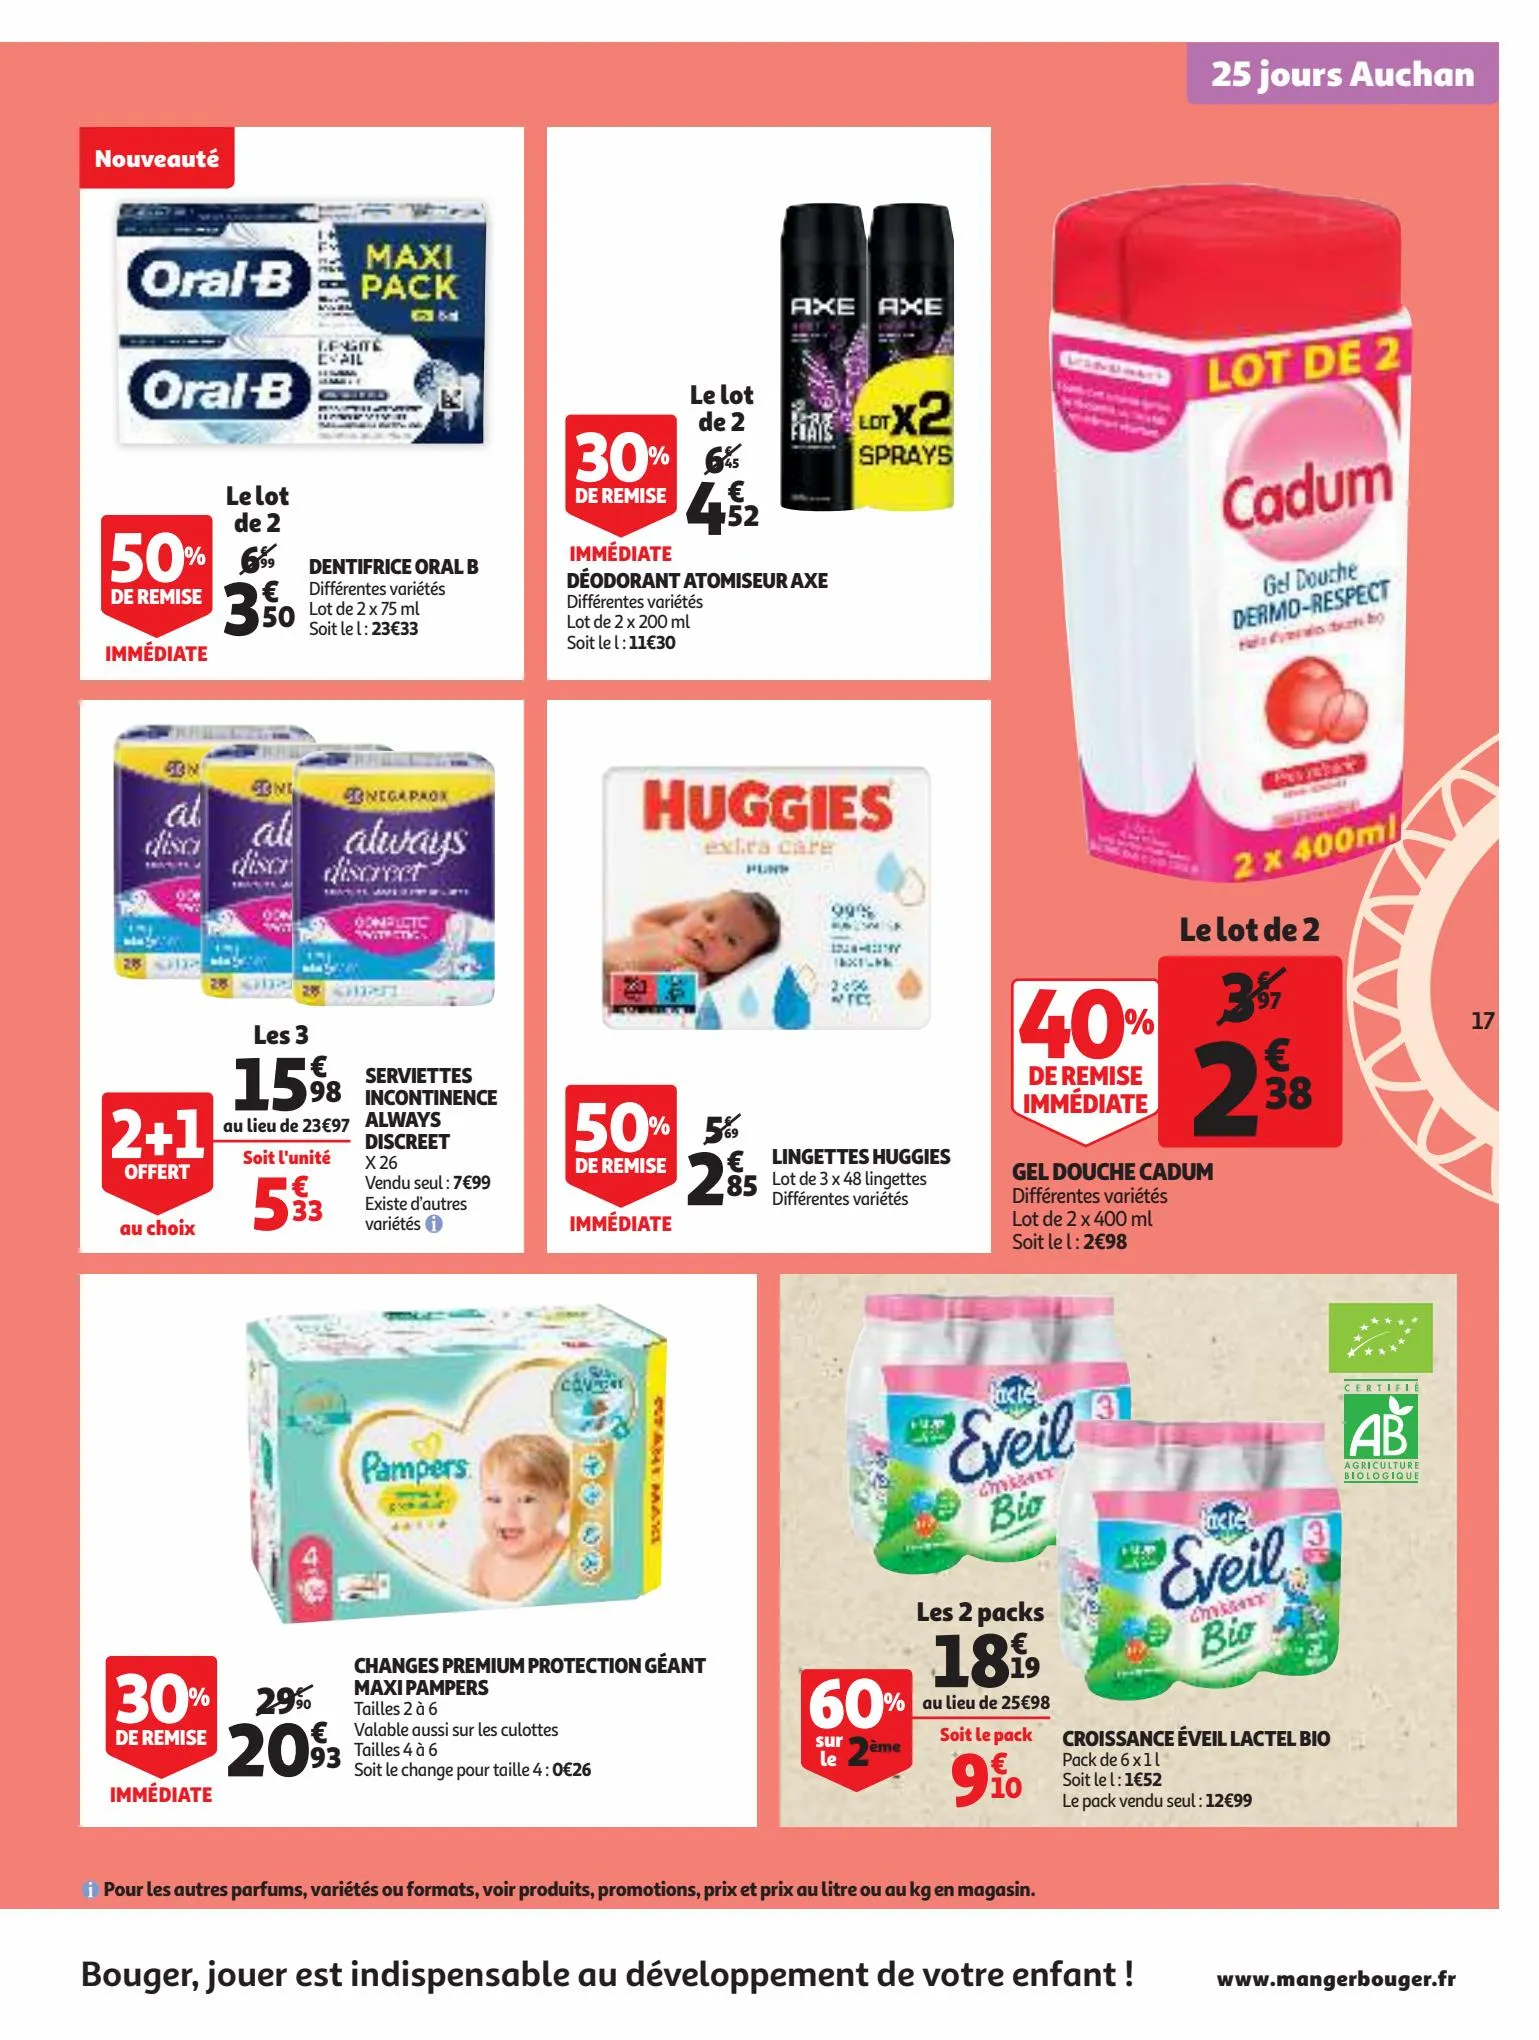 Catalogue 25 Jours Auchan, page 00017